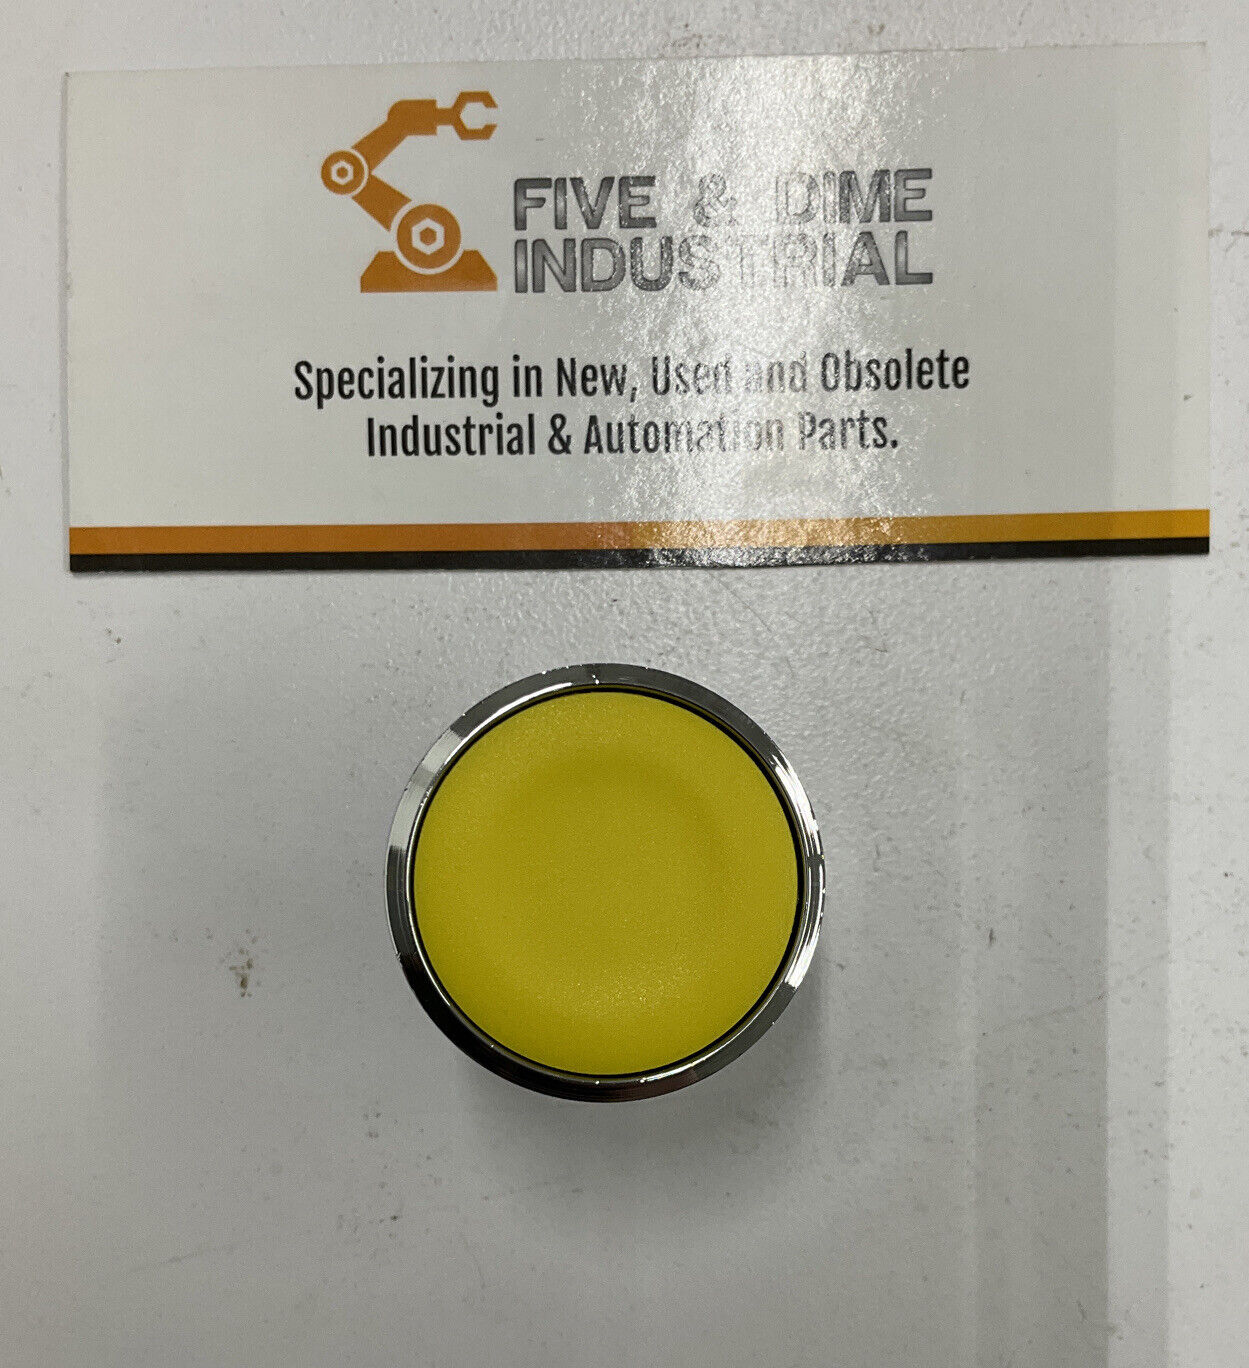 Square D / Telemecanique ZB4BA5 Yellow Push Button (CL165)